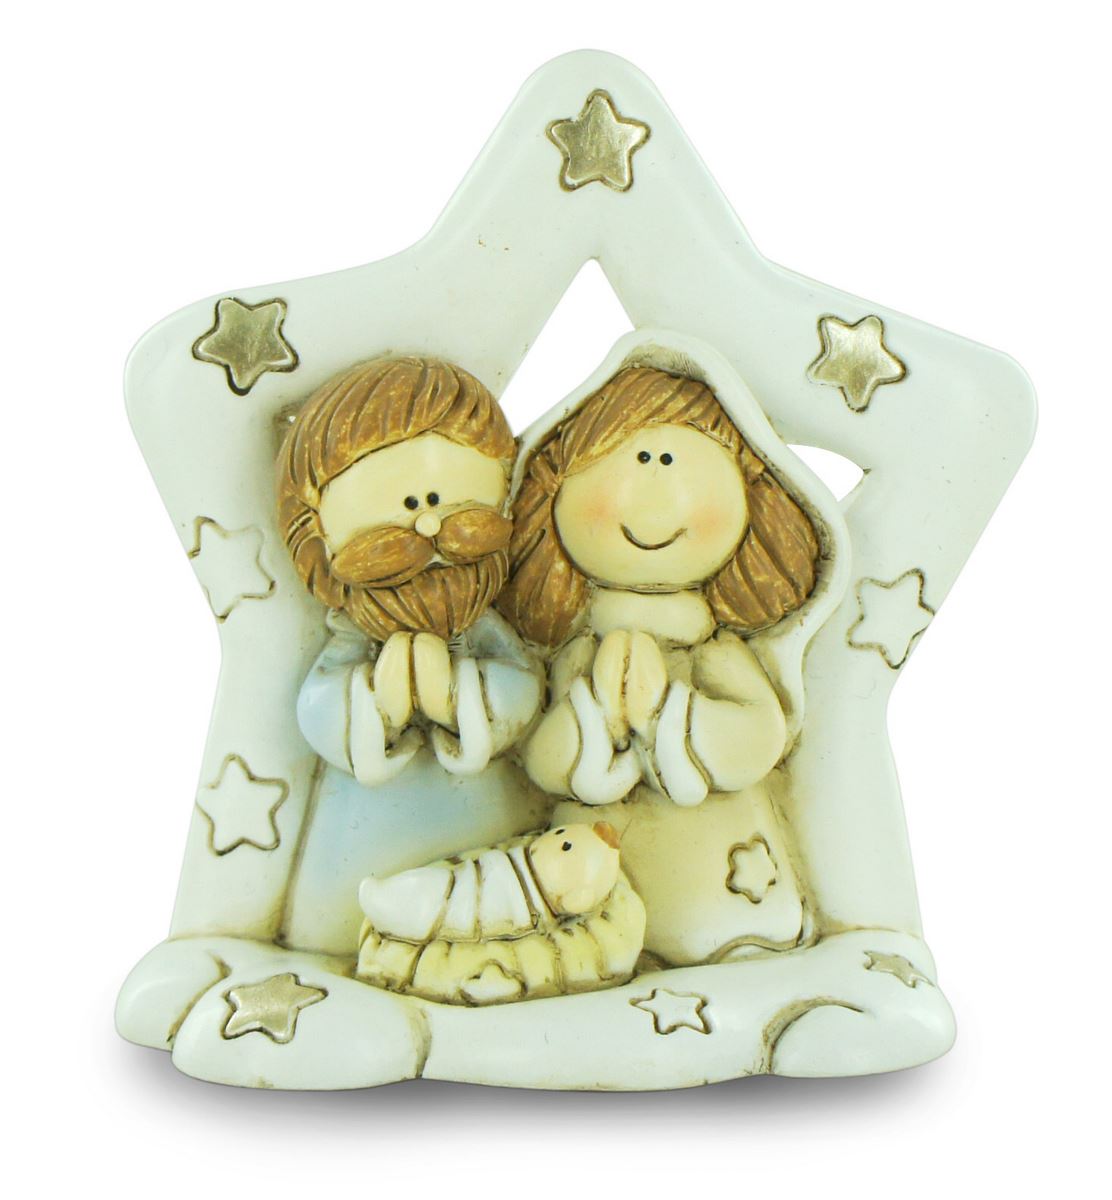 natività in resina colorata, decorazione natalizia/soprammobile a stella, piccolo presepe con sacra famiglia, 8 x 8,5 cm